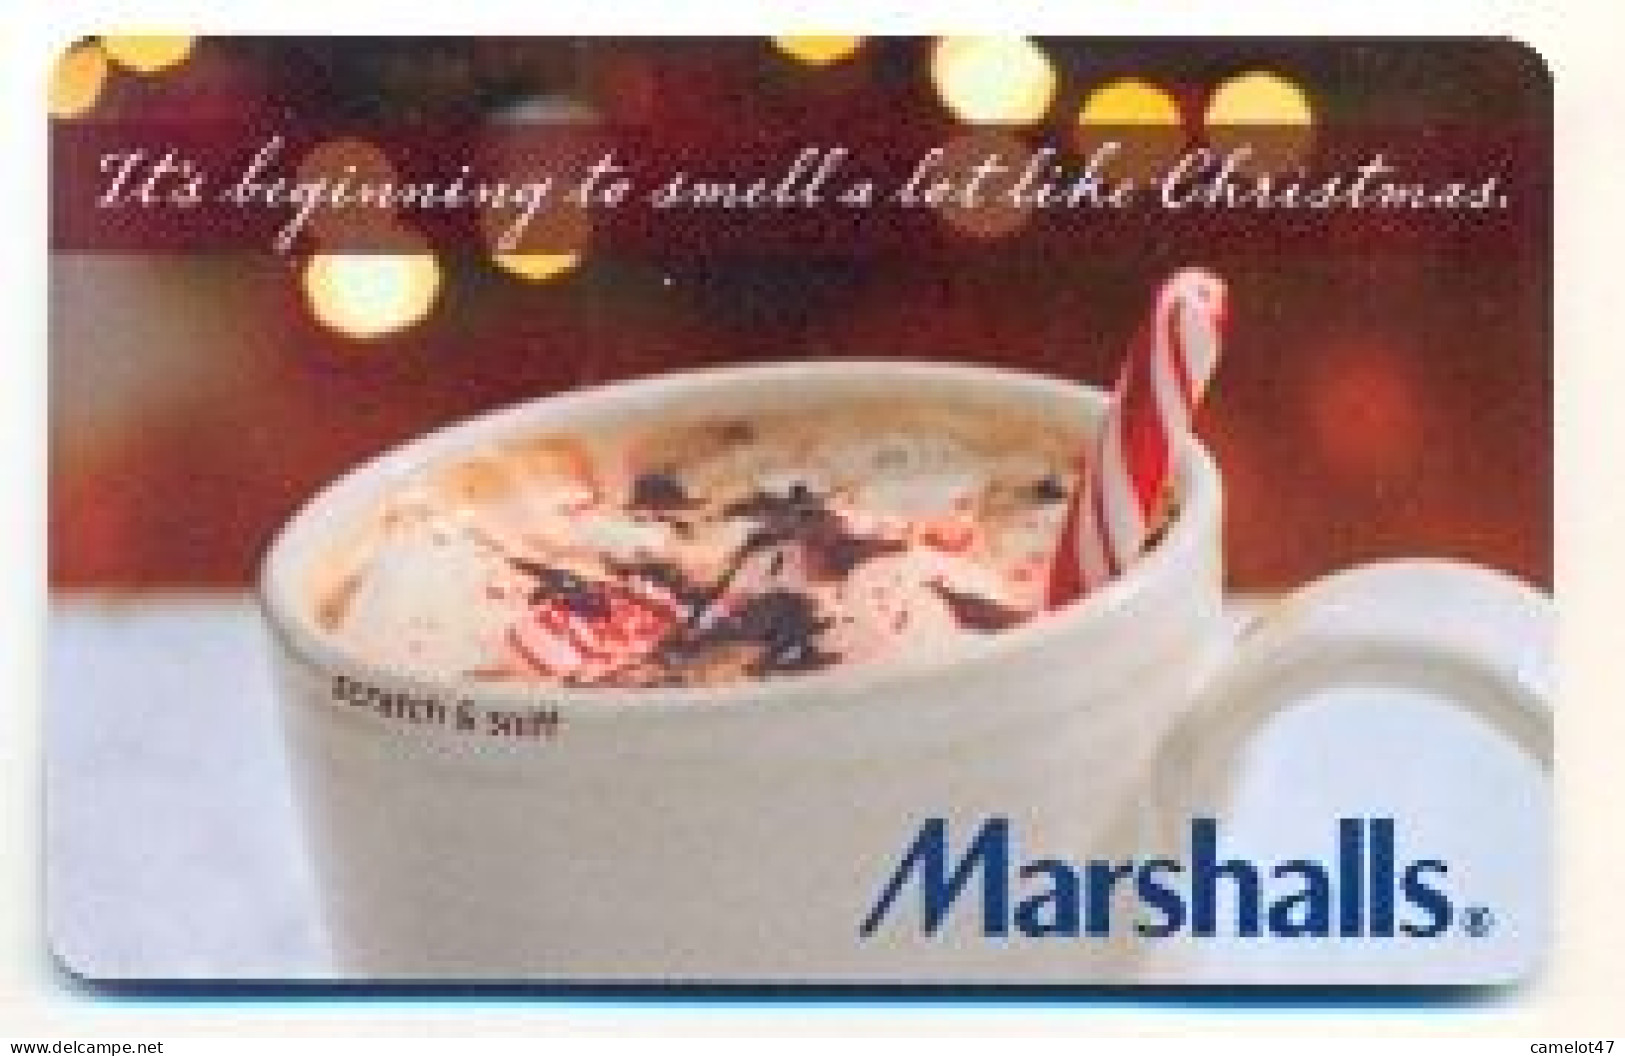 Marshalls, U.S.A., Carte Cadeau Pour Collection, Sans Valeur, # Marshalls-54 - Treuekarten